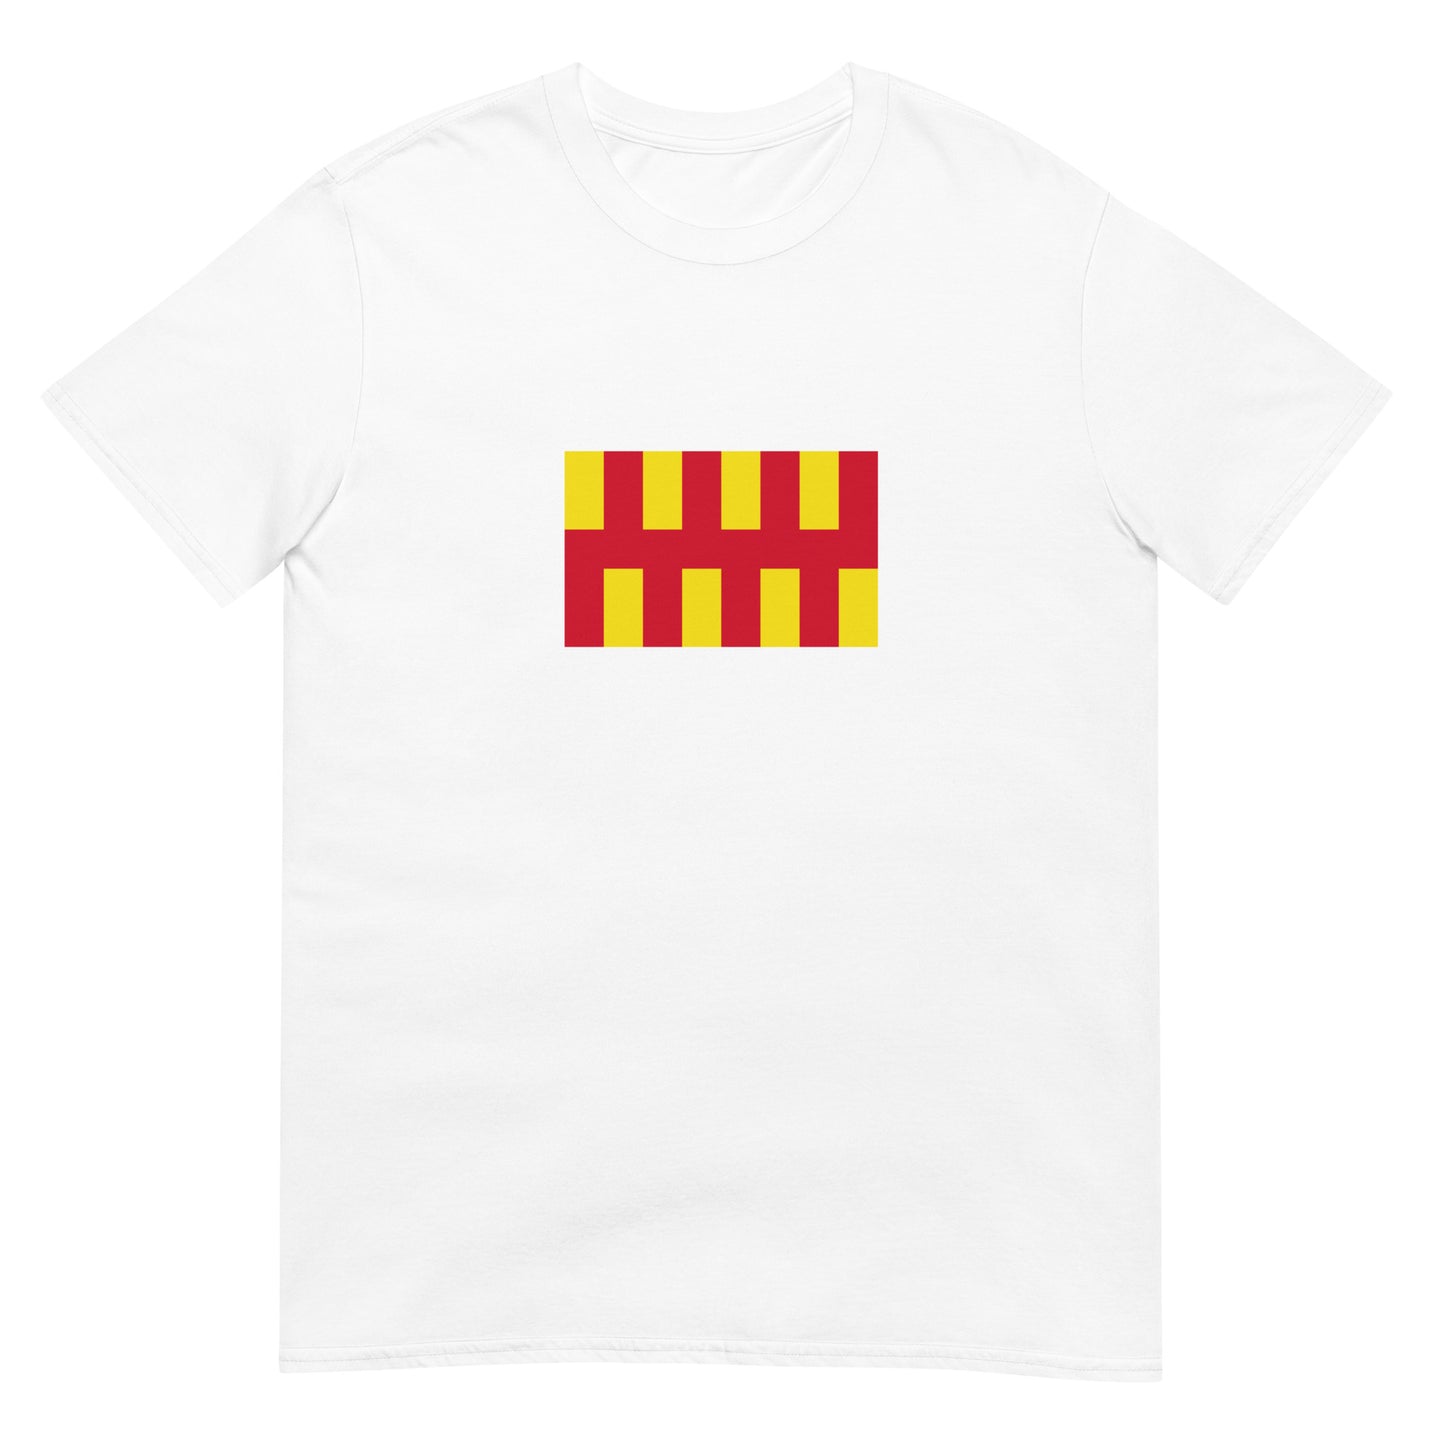 Scotland - Kingdom of Northumbria (654-954) | Historical Flag Short-Sleeve Unisex T-Shirt